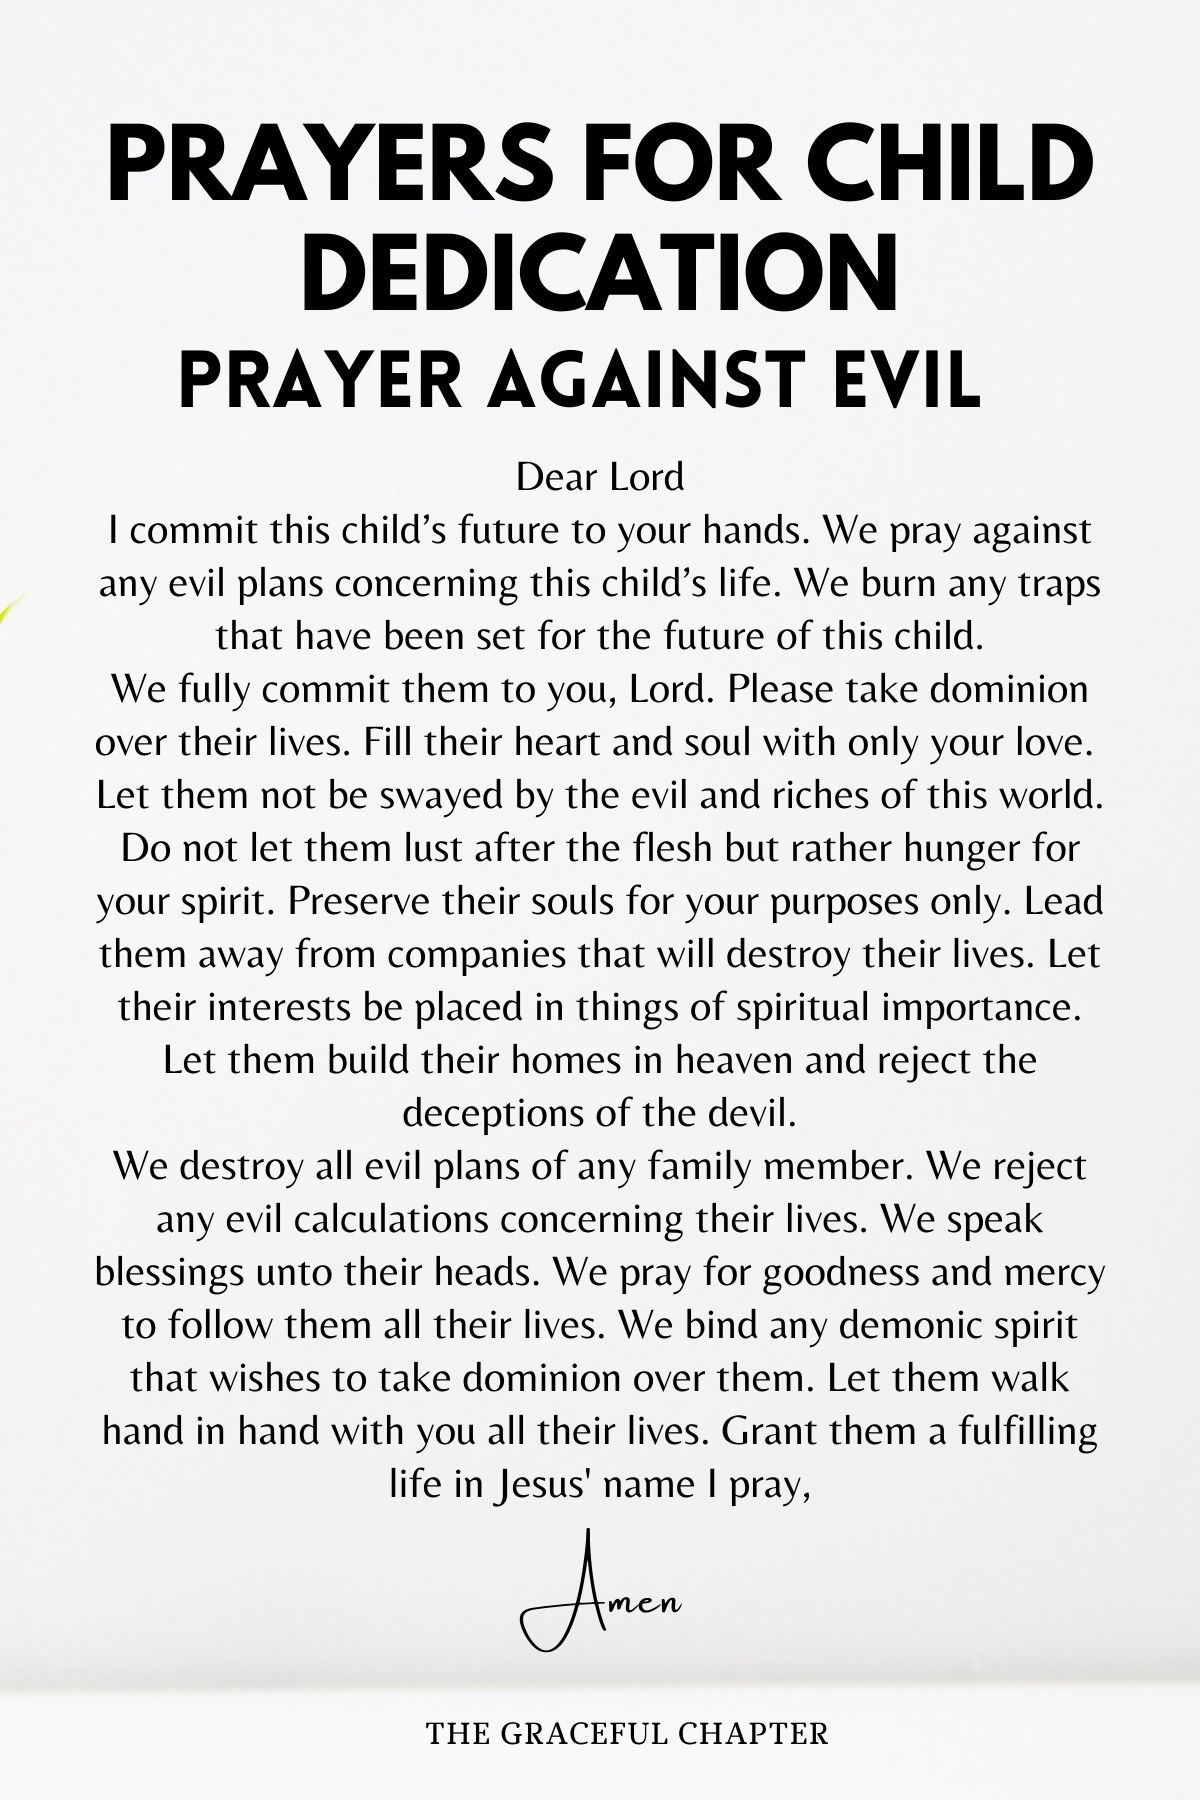 prayers for child dedication - Prayer against Evil